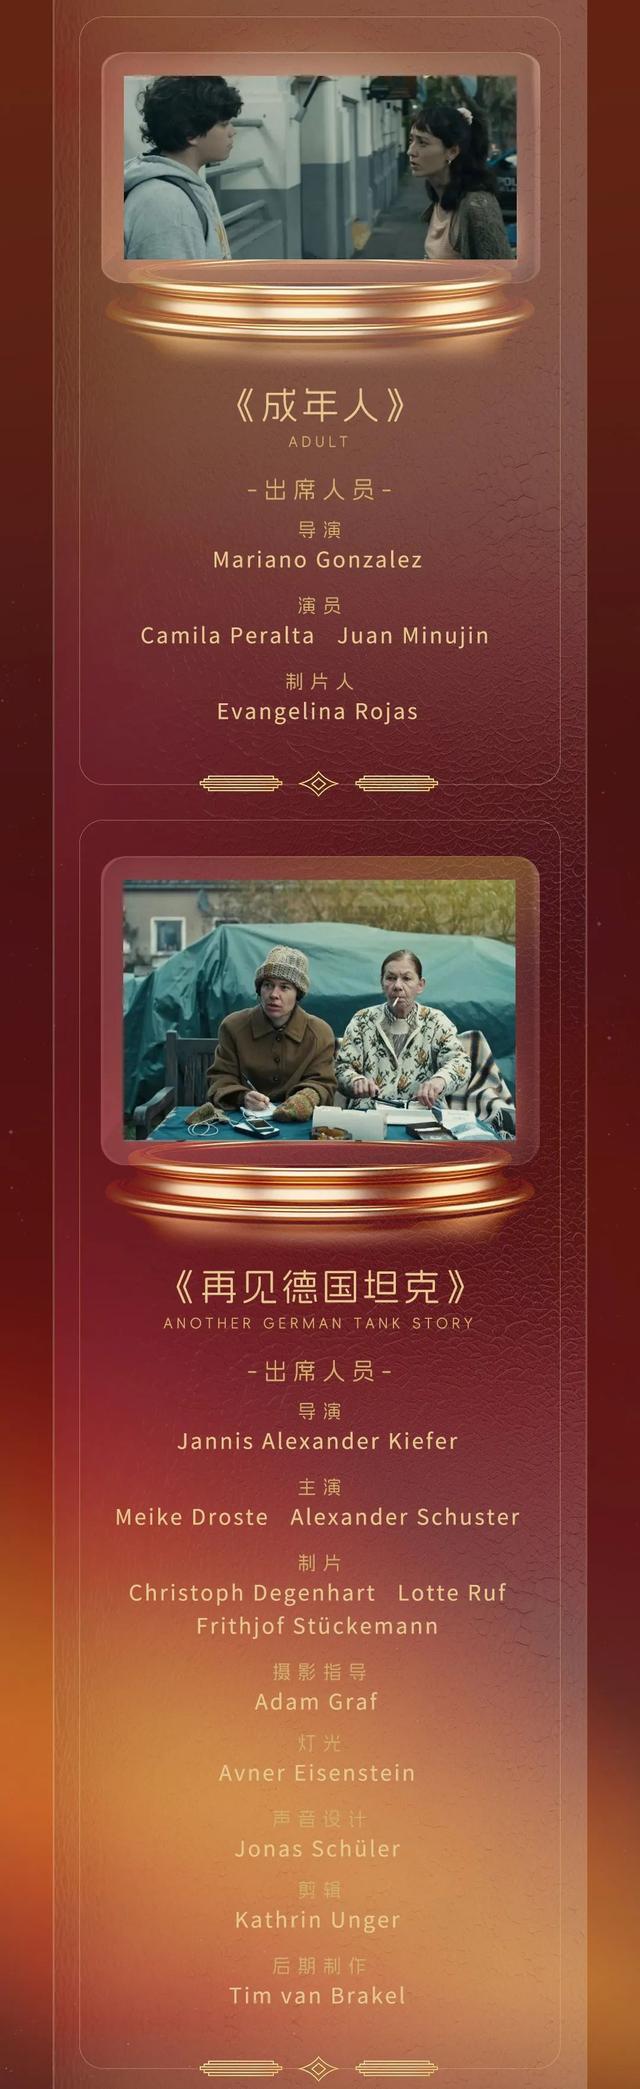 第二十六届上海国际电影节金爵盛典红毯阵容公布